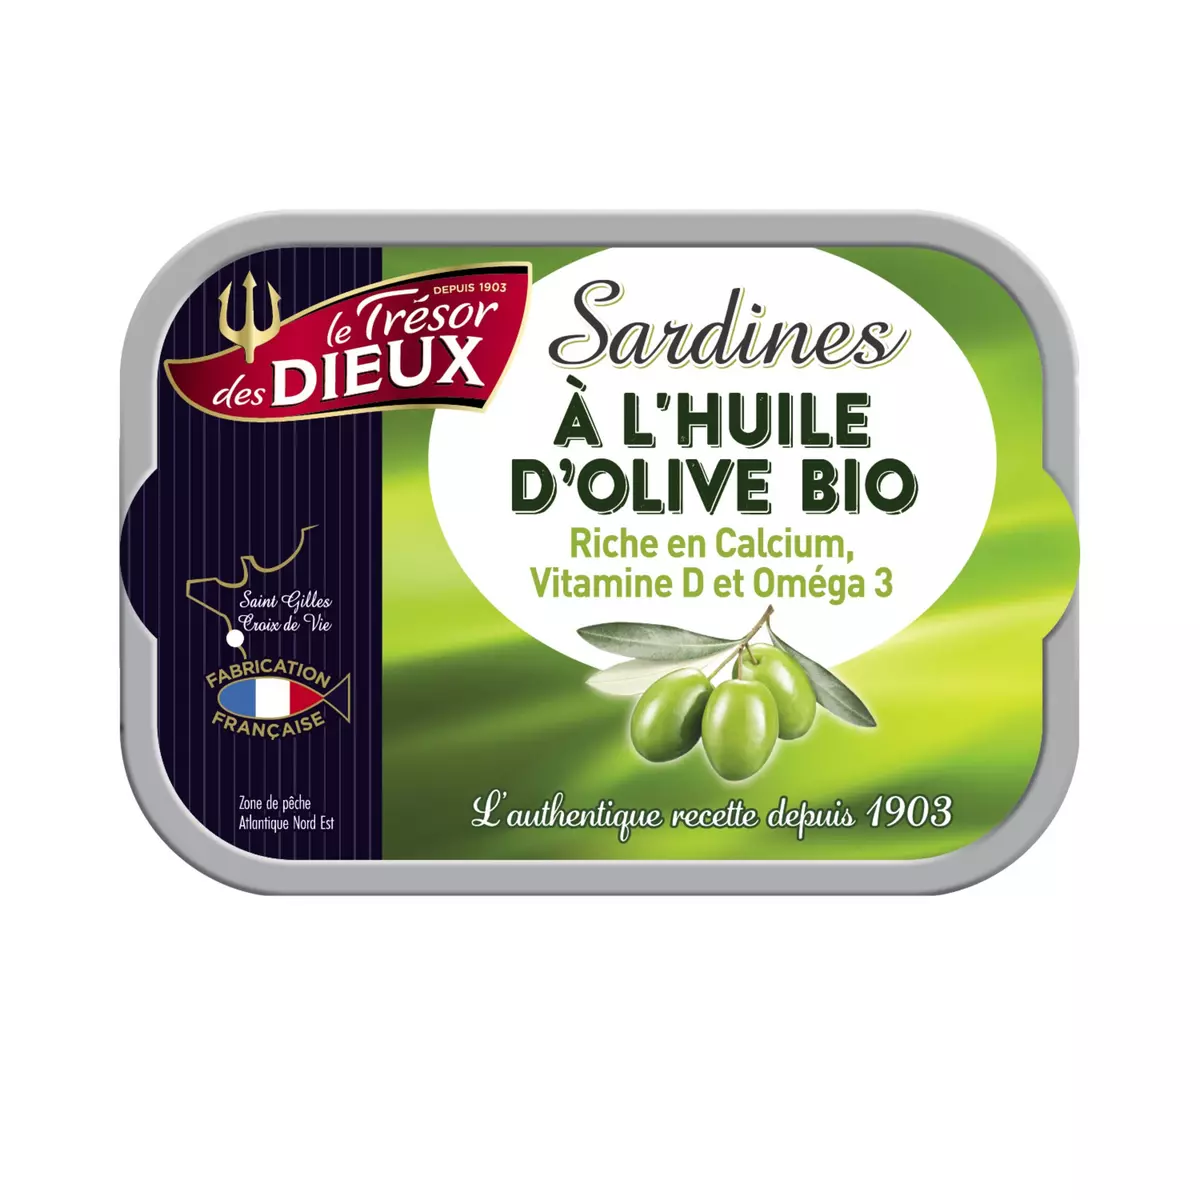 LE TRESOR DES DIEUX Sardines à l'huile d'olive bio 115g